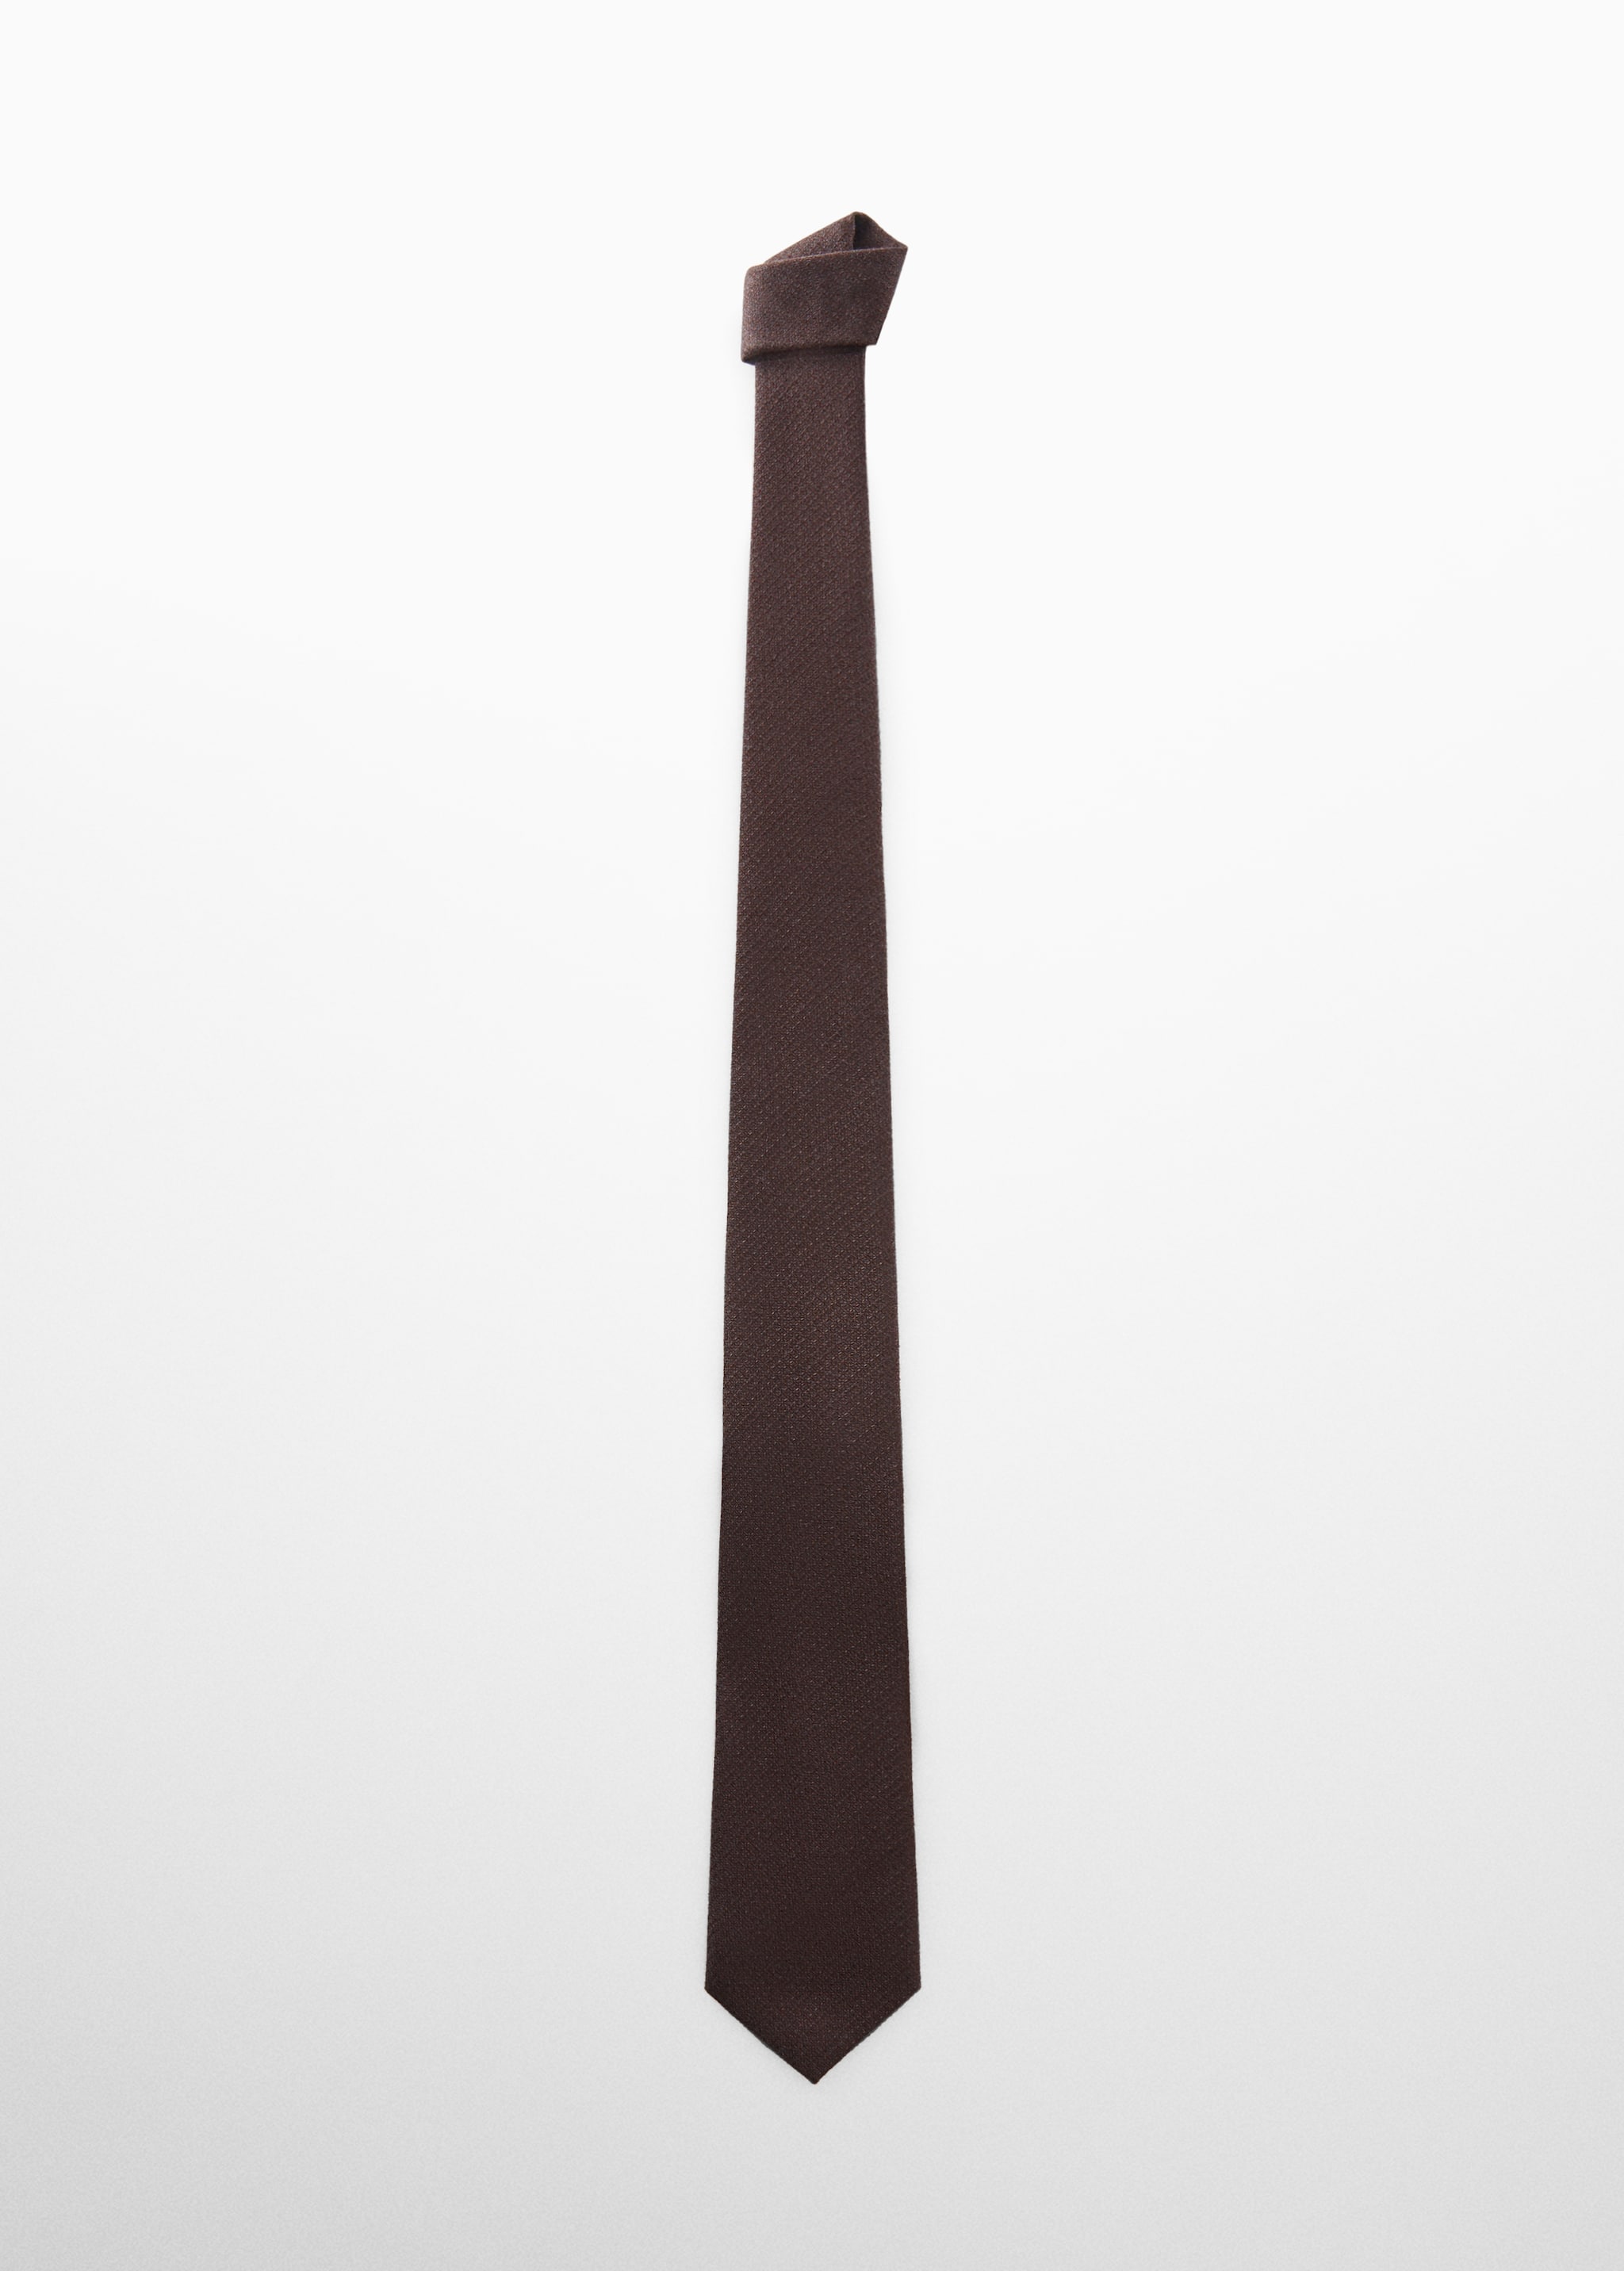 Фактурный галстук из хлопка - Изделие без модели